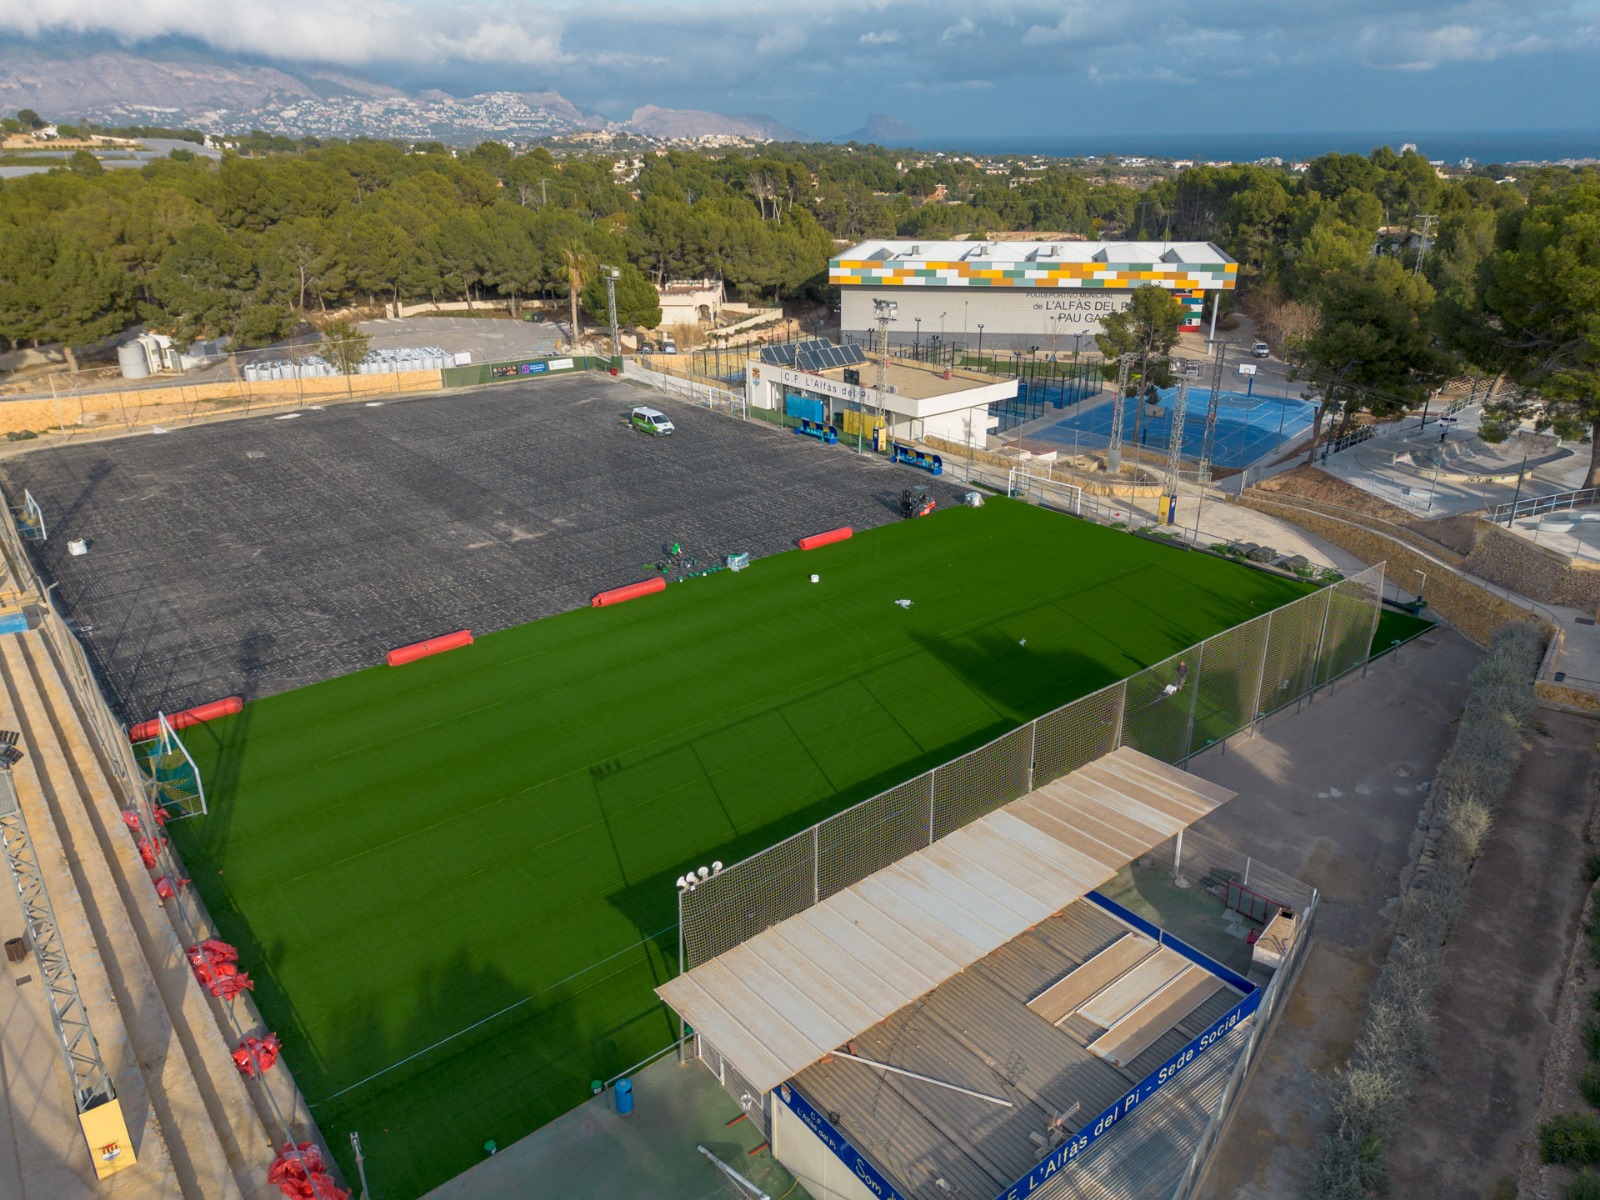 En marcha la renovación del campo de césped artificial del polideportivo de l’Alfàs